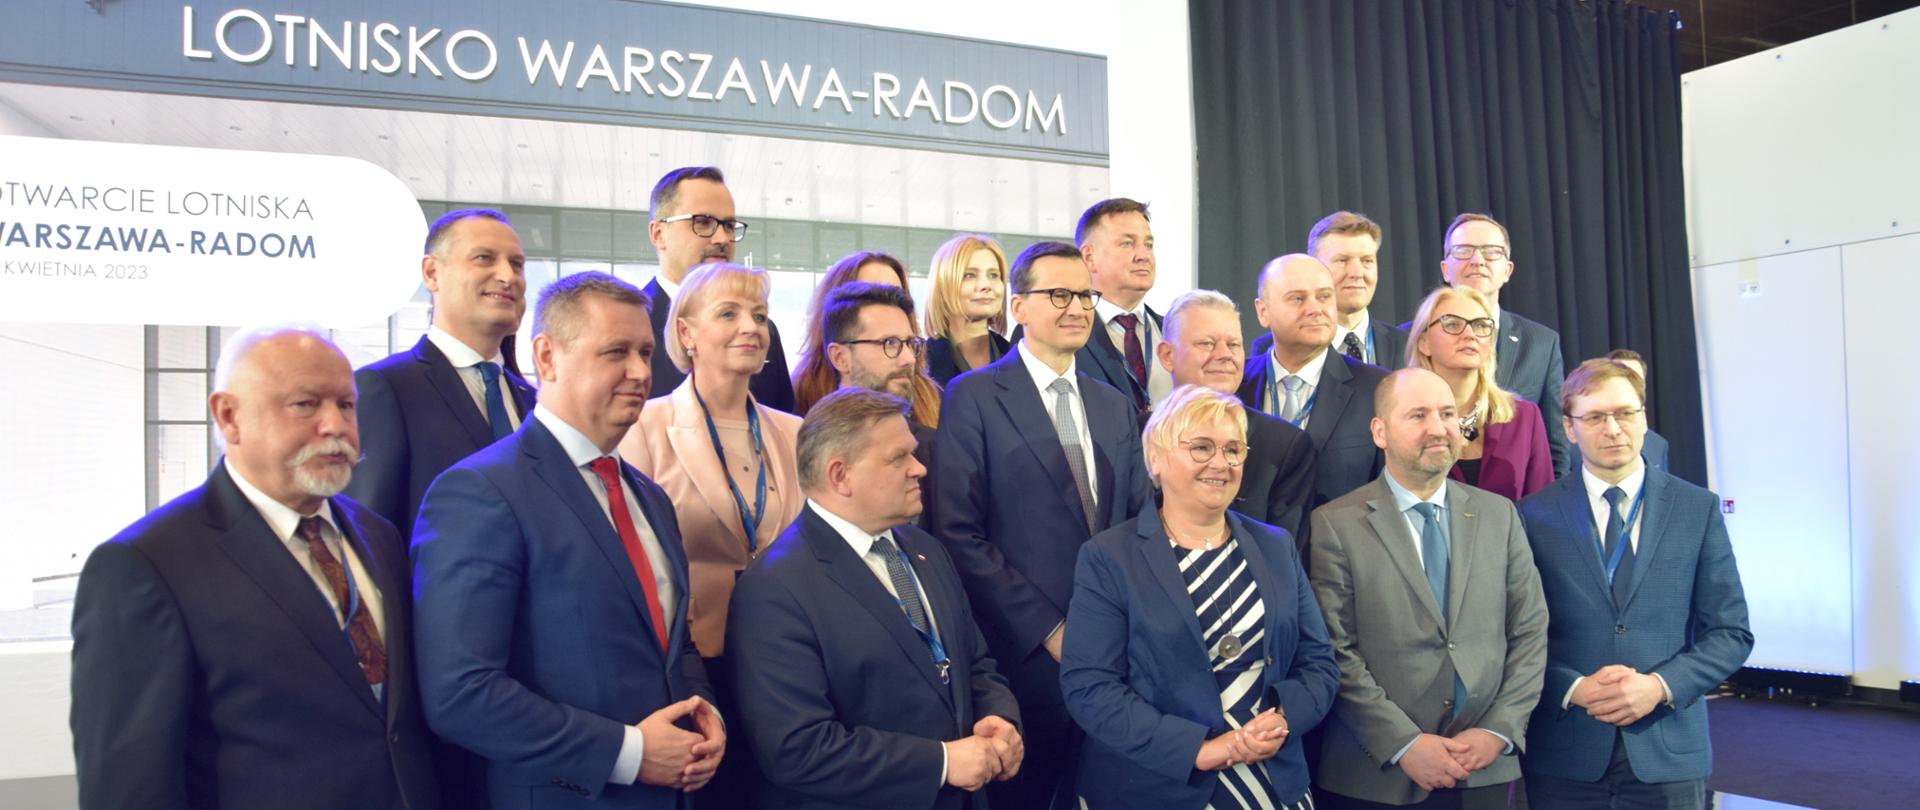 Uroczyste otwarcie lotniska Warszawa-Radom